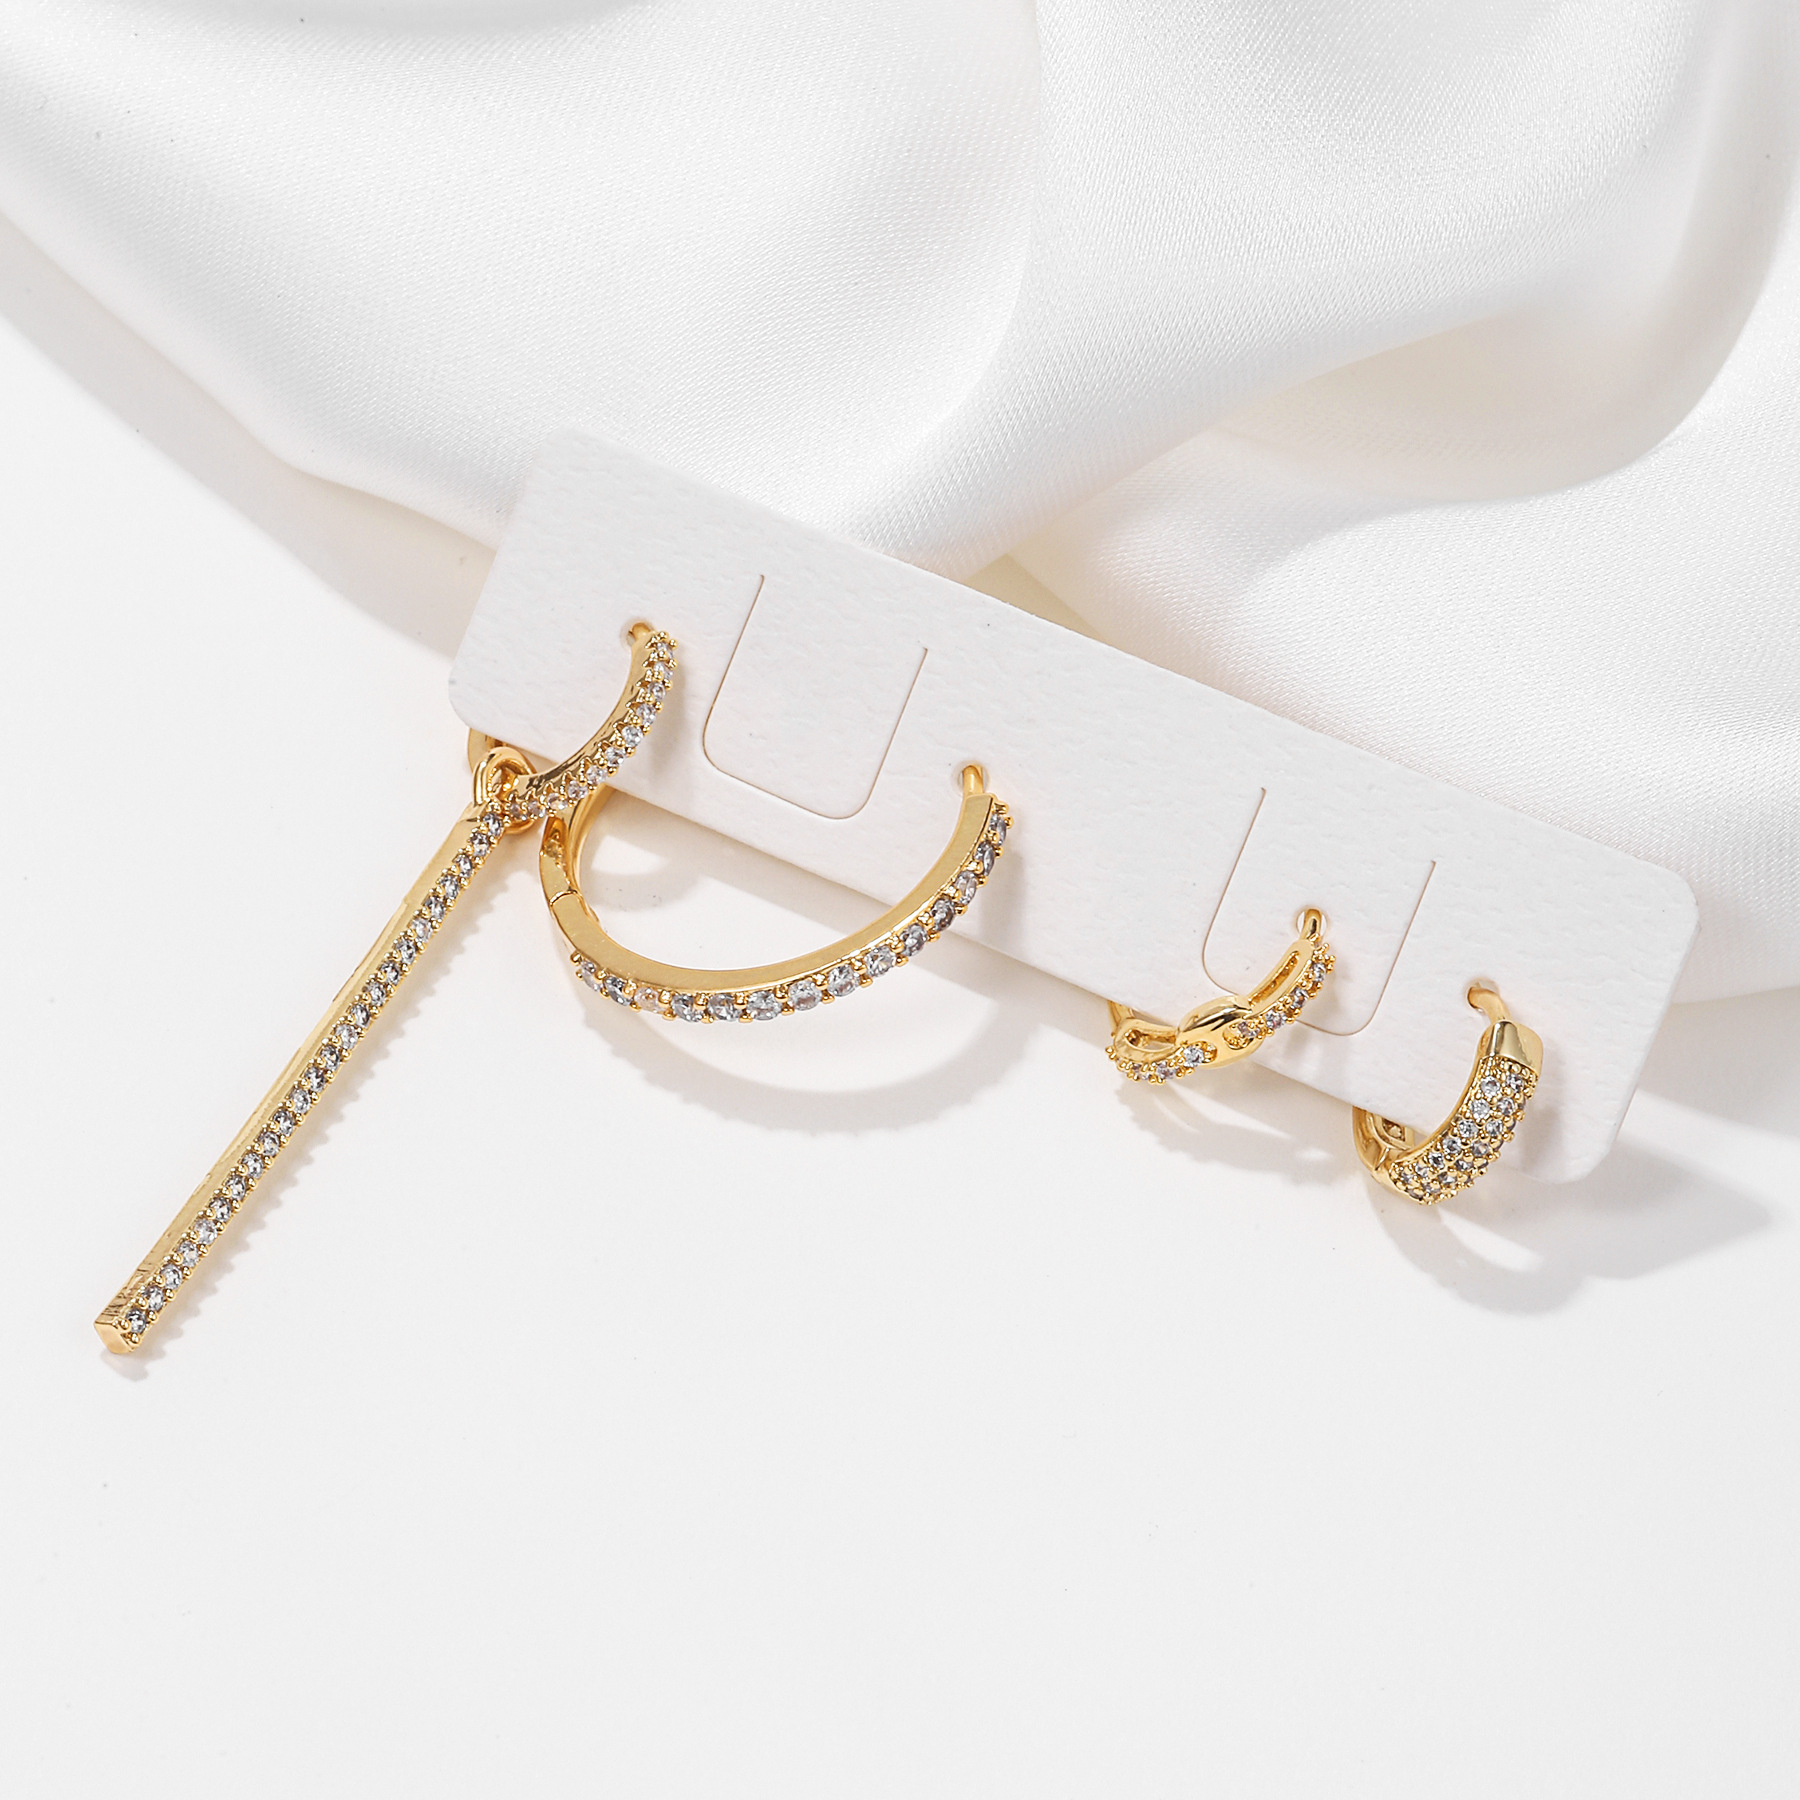 SATINE Ear Clip Set Niche Design Refreshing Stylish Fine Zircon-Embedded Earrings Ornament Four-Piece Set Earrings for Women